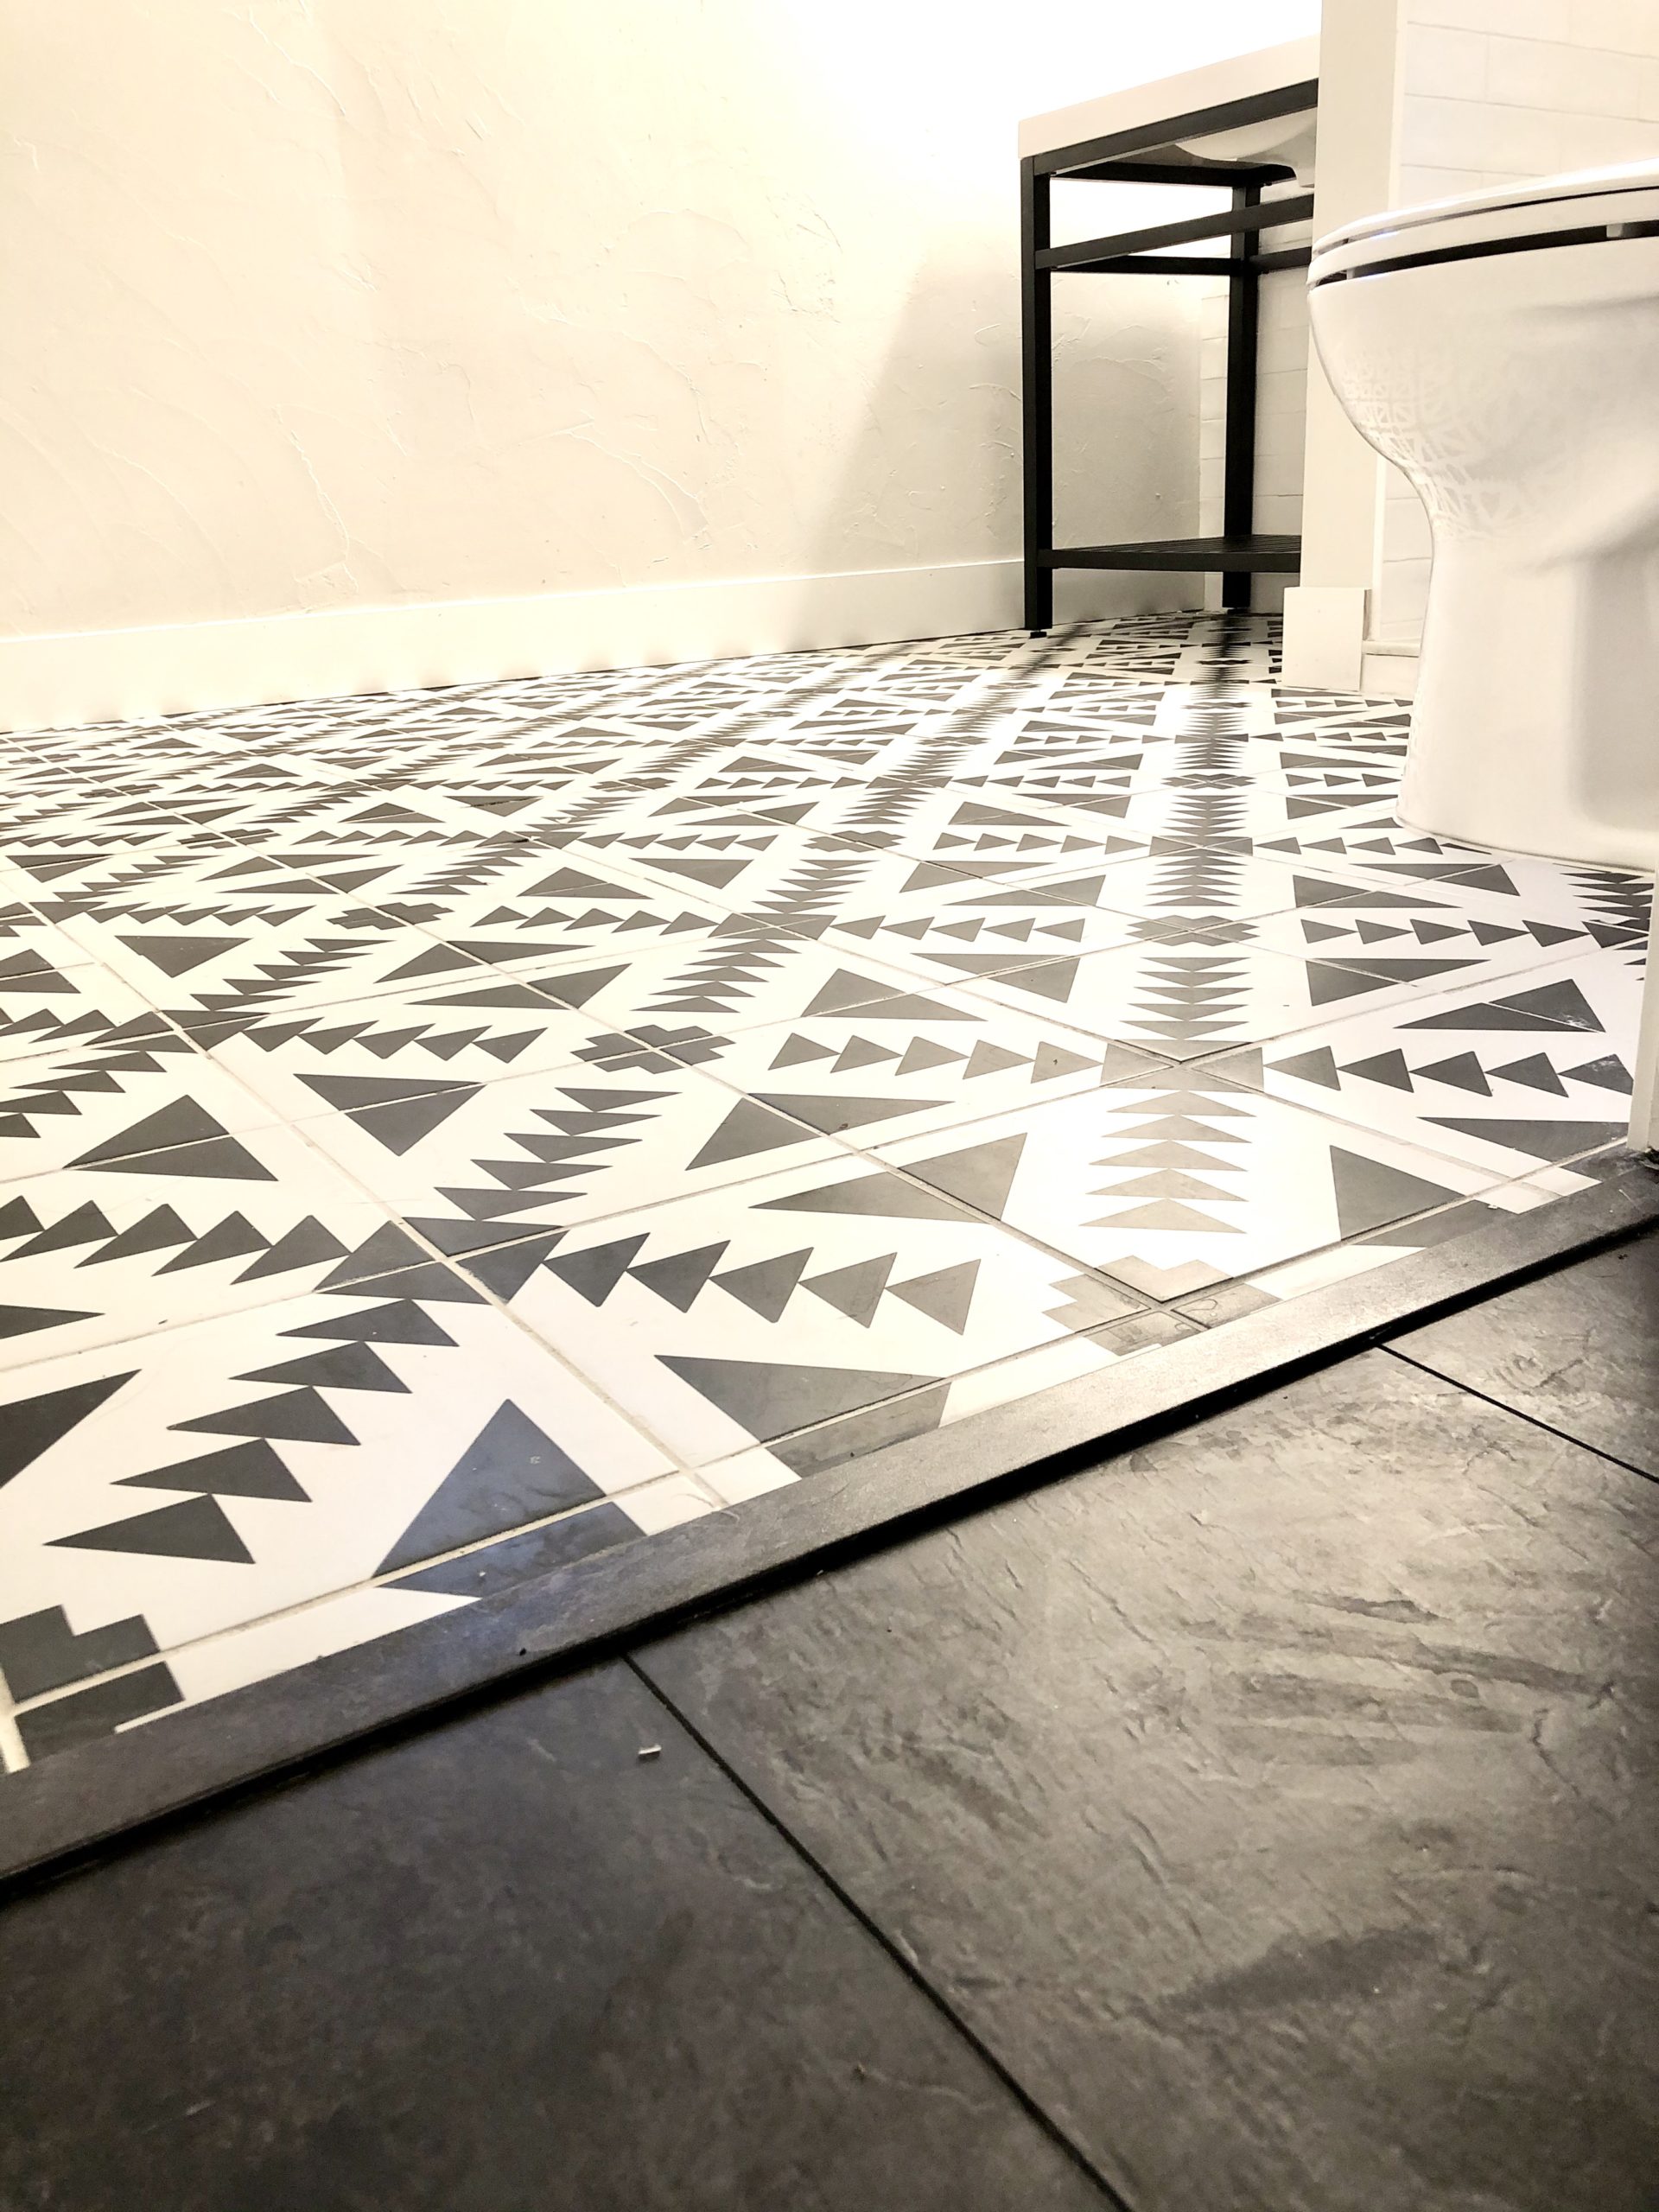 Bellaire Street Tile Flooring post modern design interior white black